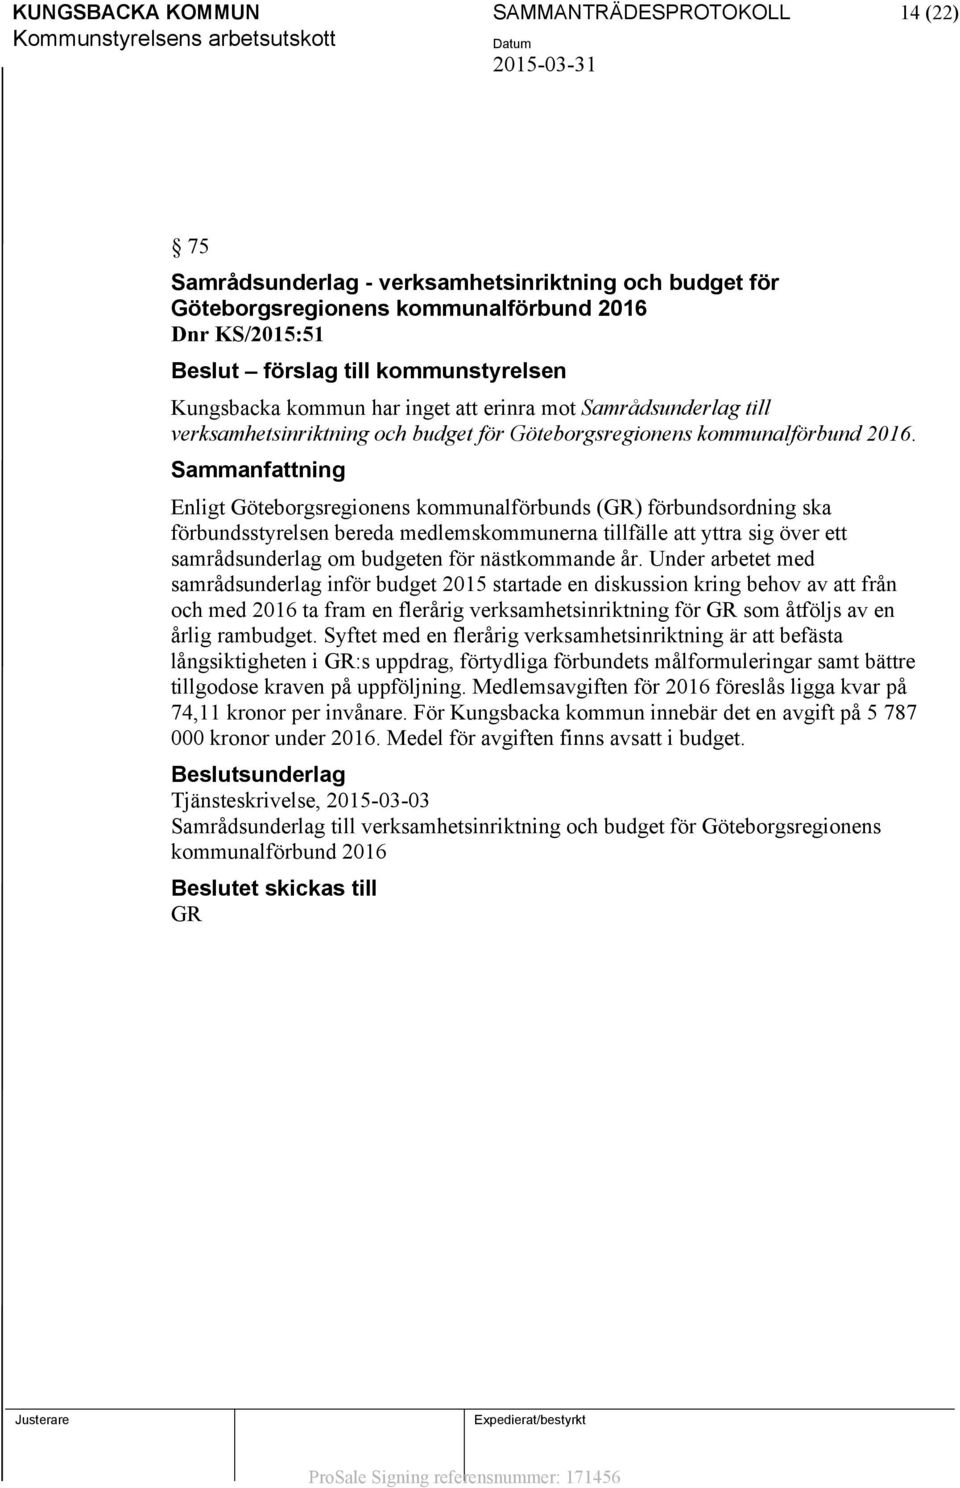 Enligt Göteborgsregionens kommunalförbunds (GR) förbundsordning ska förbundsstyrelsen bereda medlemskommunerna tillfälle att yttra sig över ett samrådsunderlag om budgeten för nästkommande år.